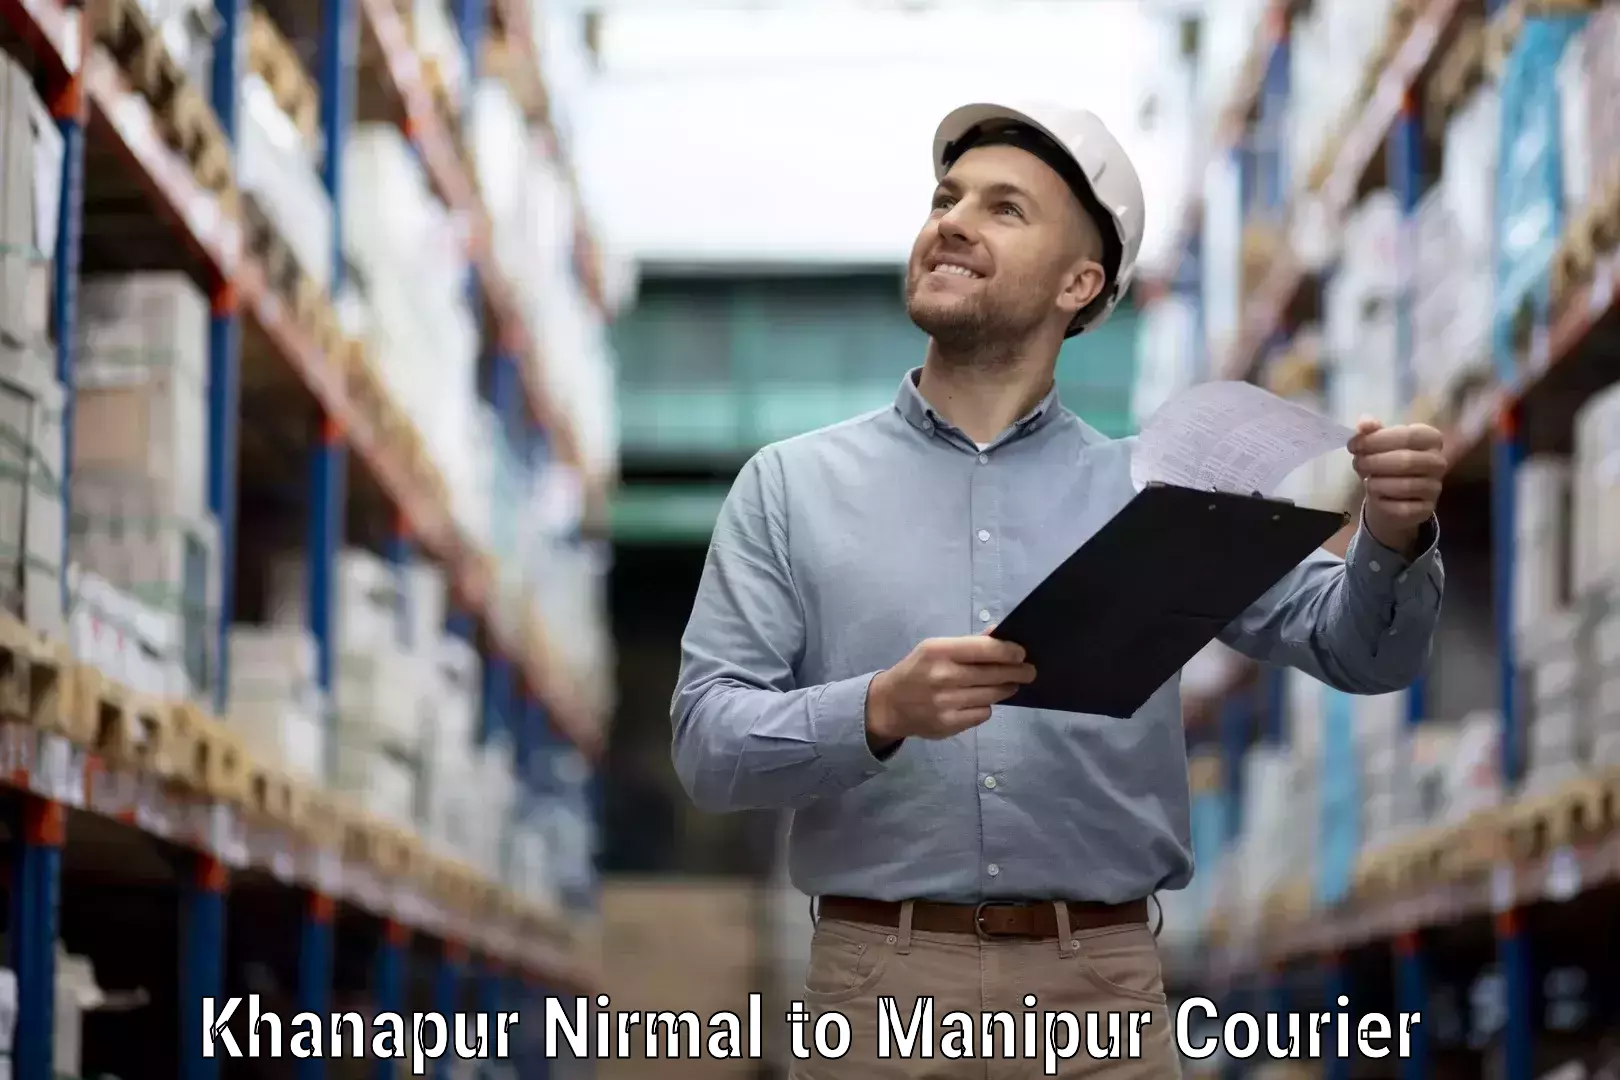 Courier rate comparison Khanapur Nirmal to Chandel